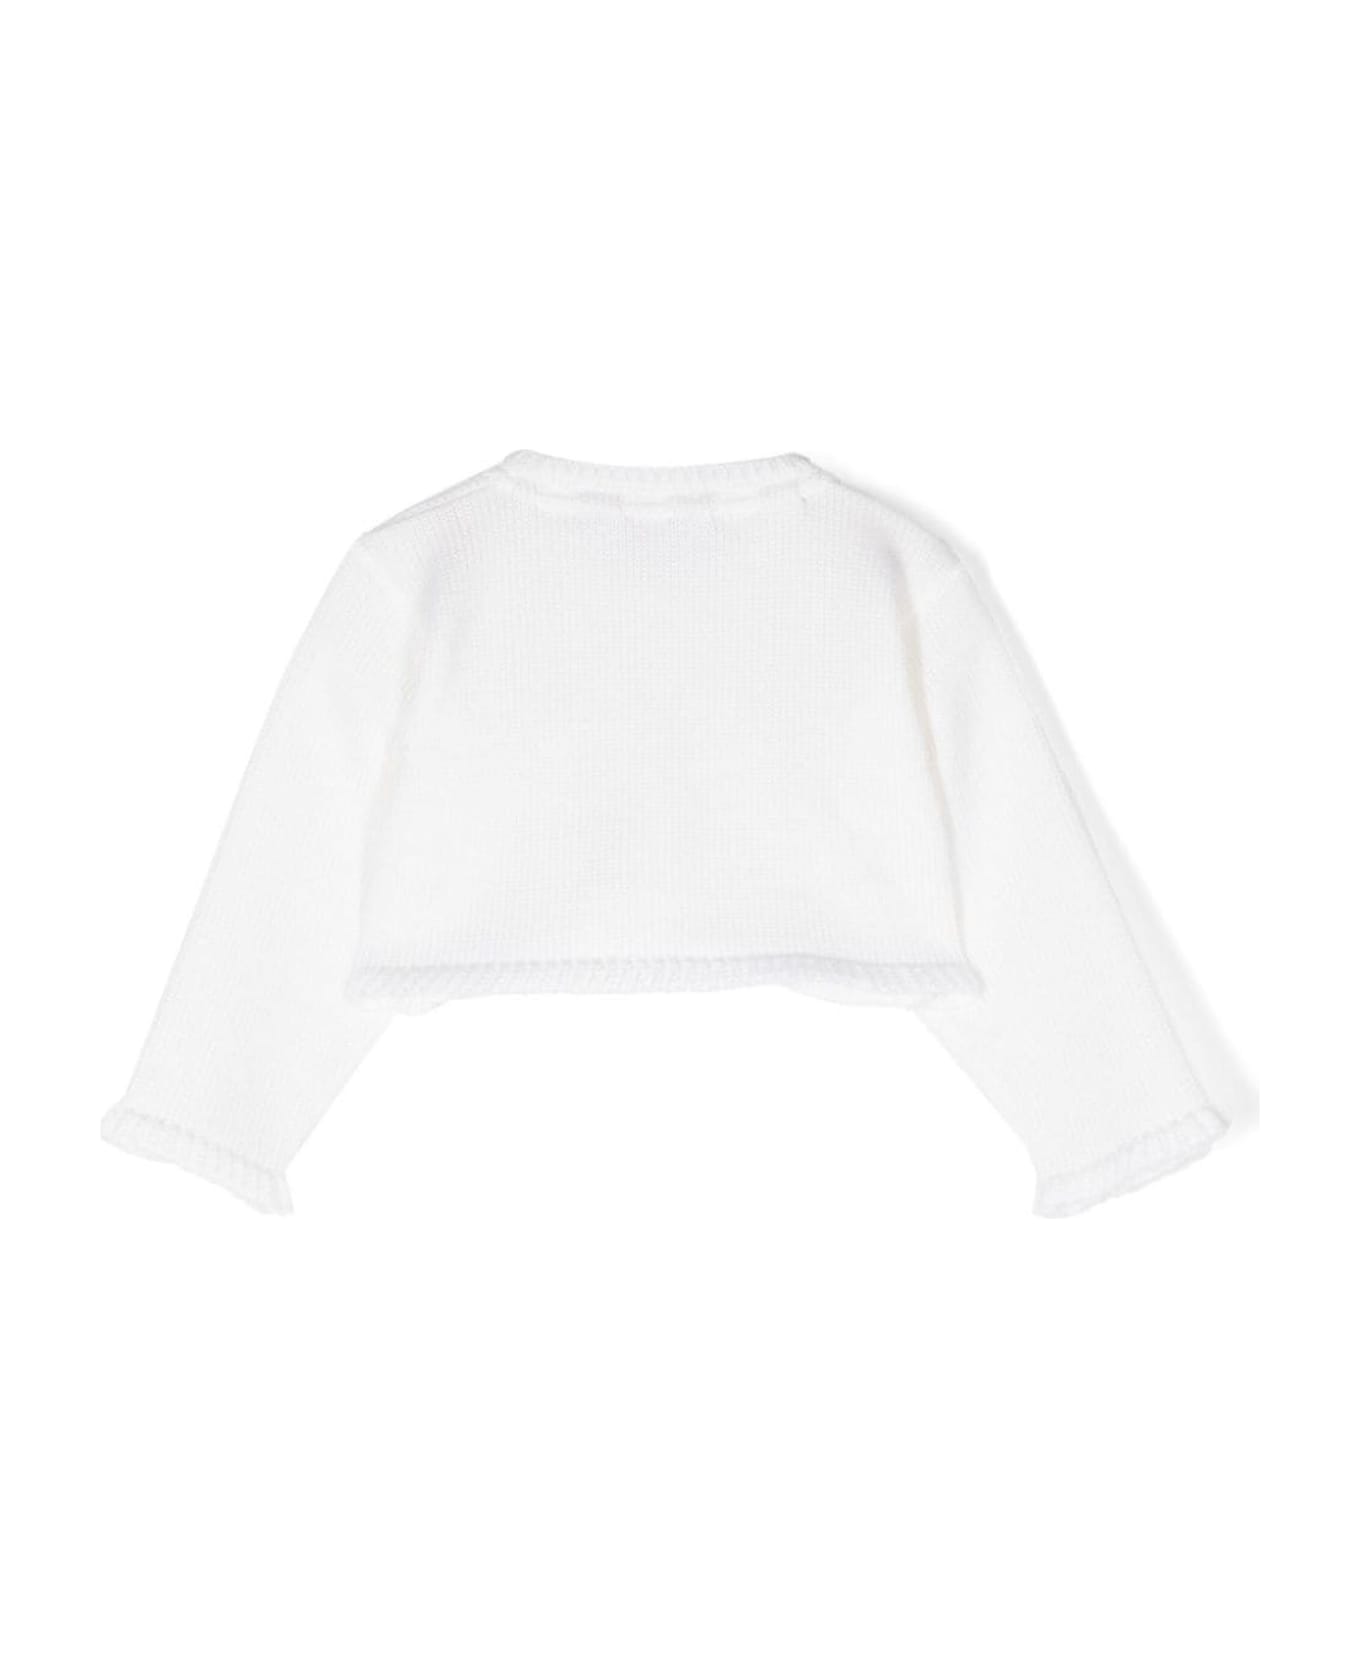 La stupenderia Sweaters White - White